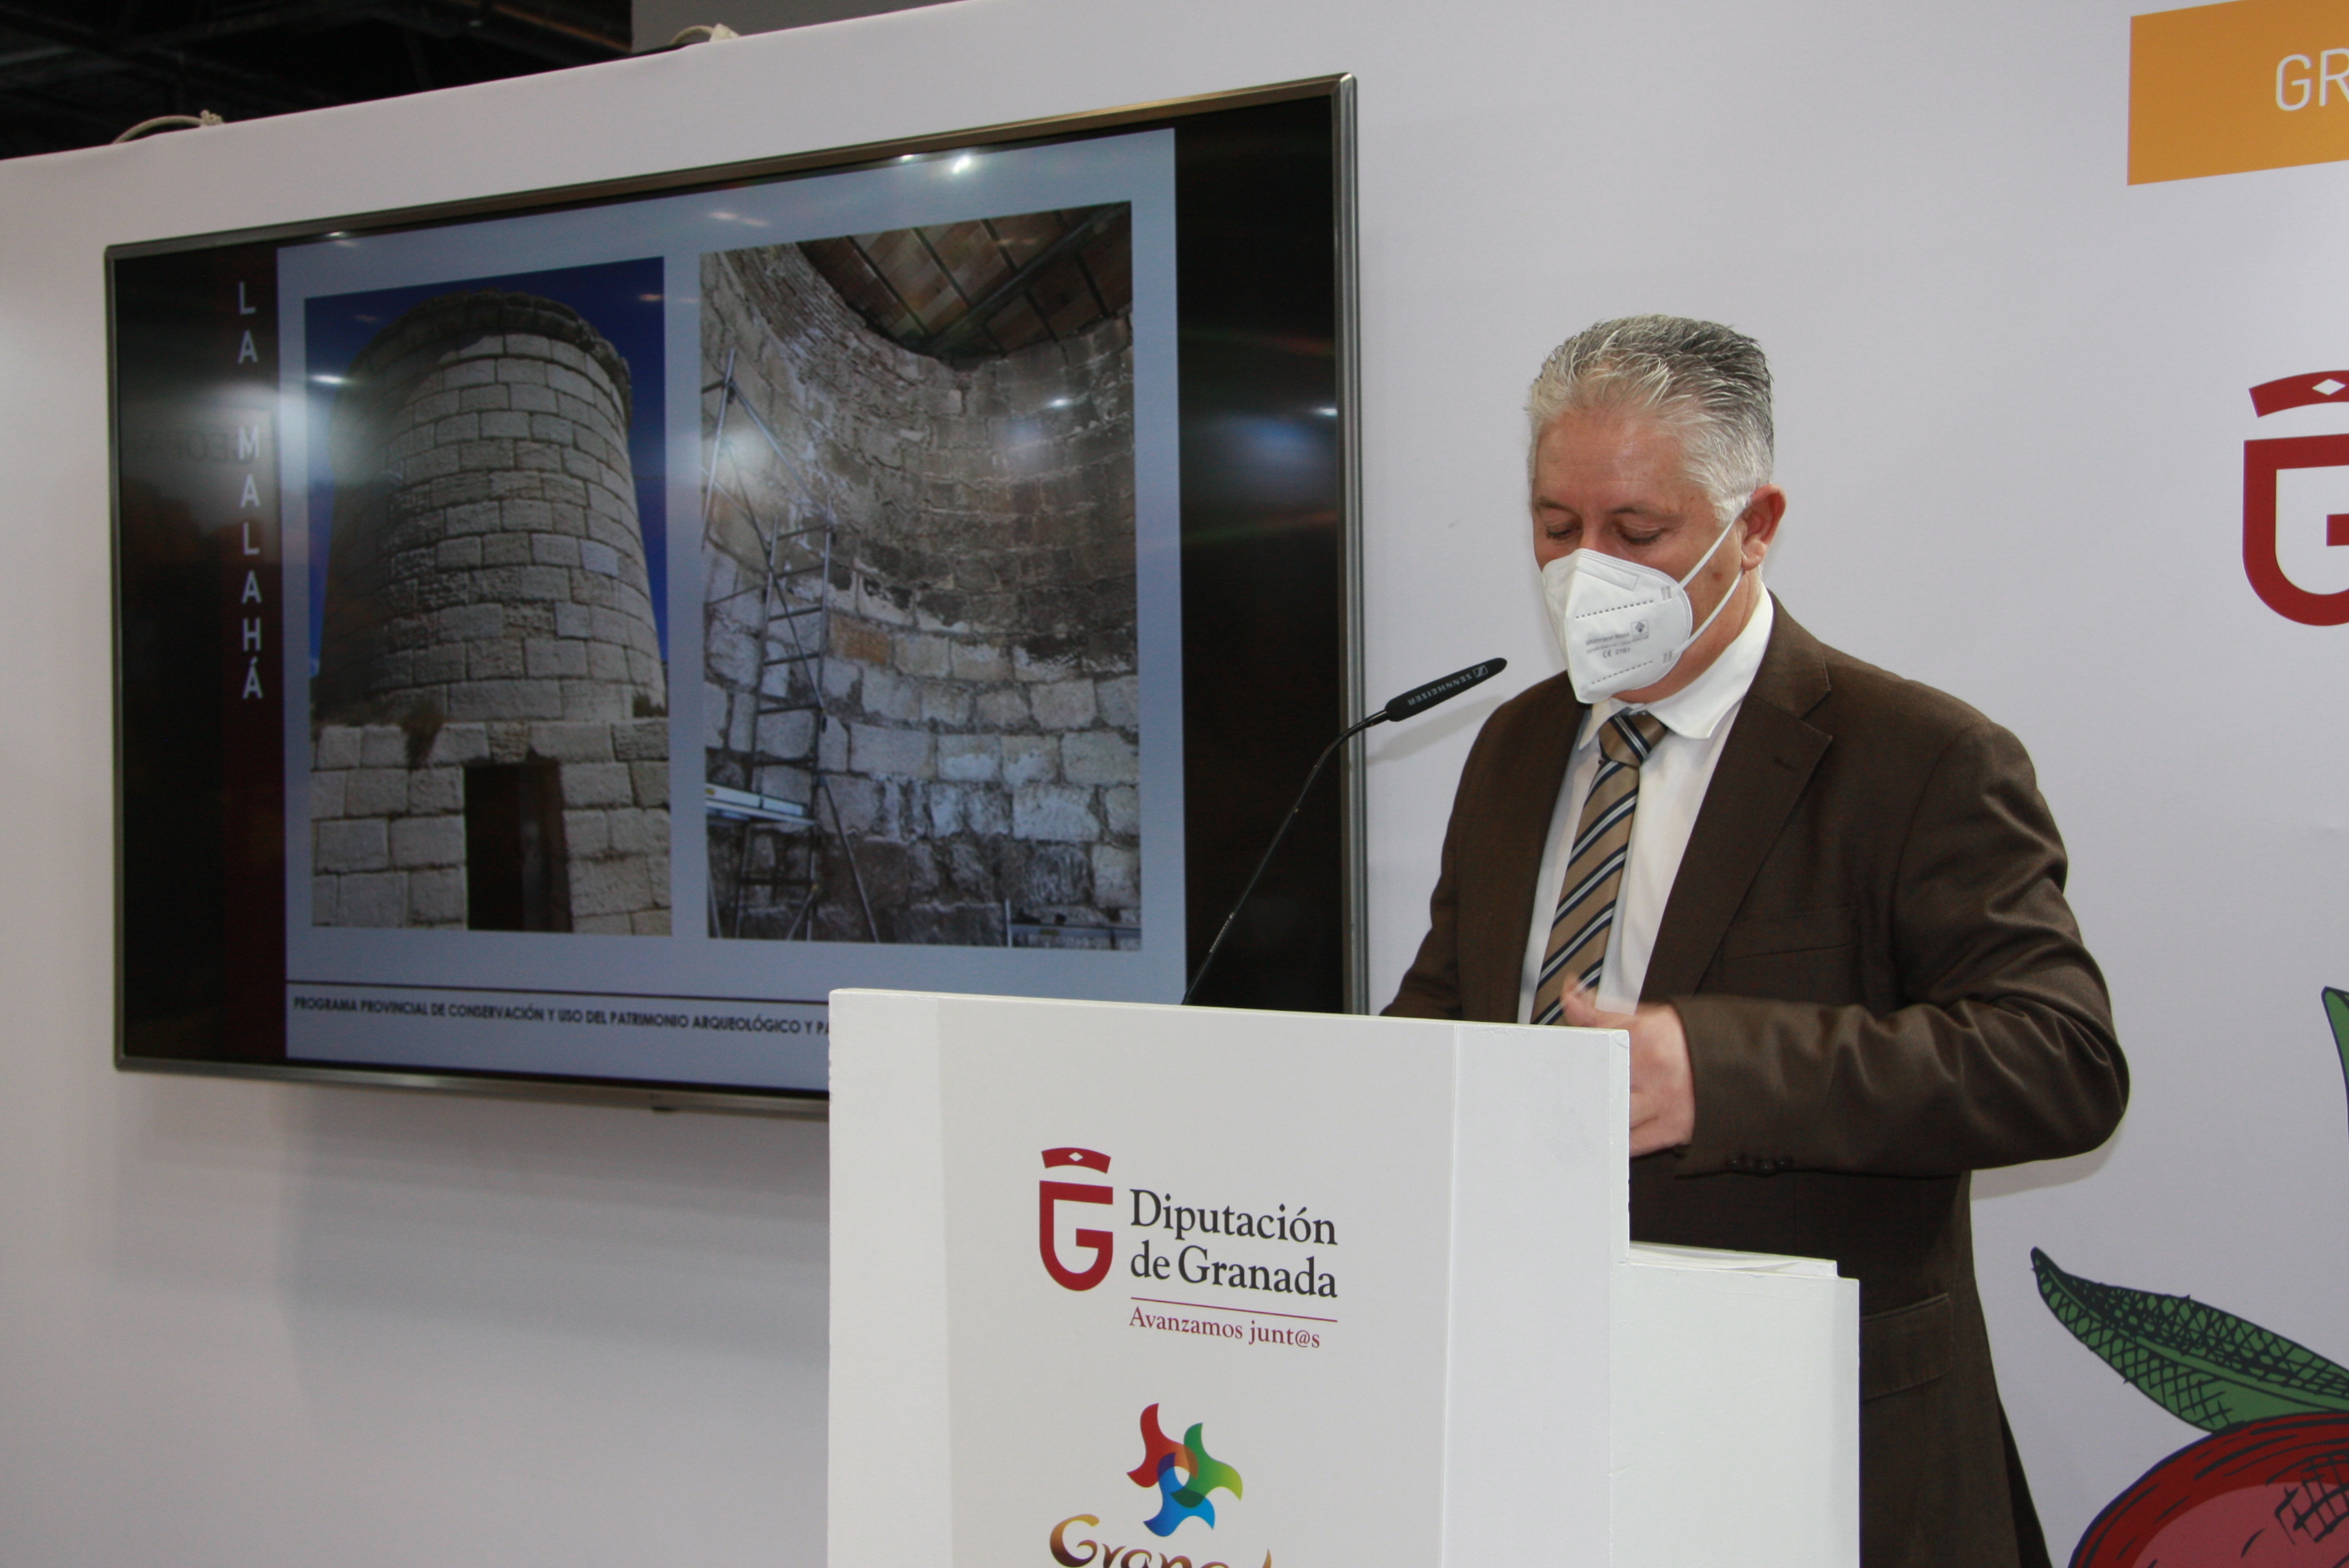 El plan de conservación del patrimonio de Diputación permitirá crear rutas turísticas culturales